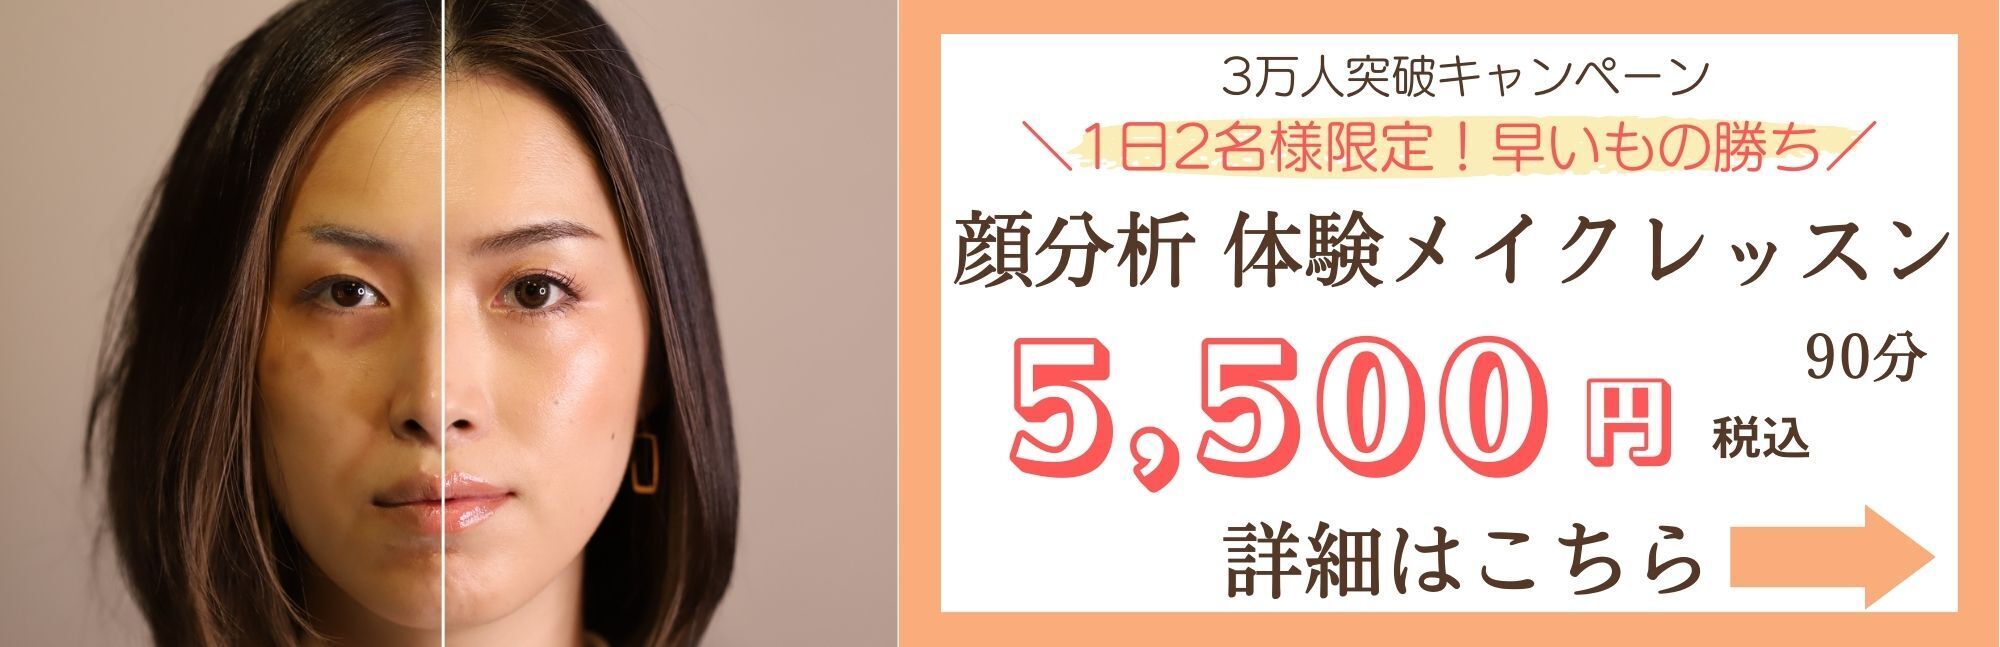 顔分析体験メイクレッスン5,500円
メイクレッスン 東京
似合うメイク教えてくれる